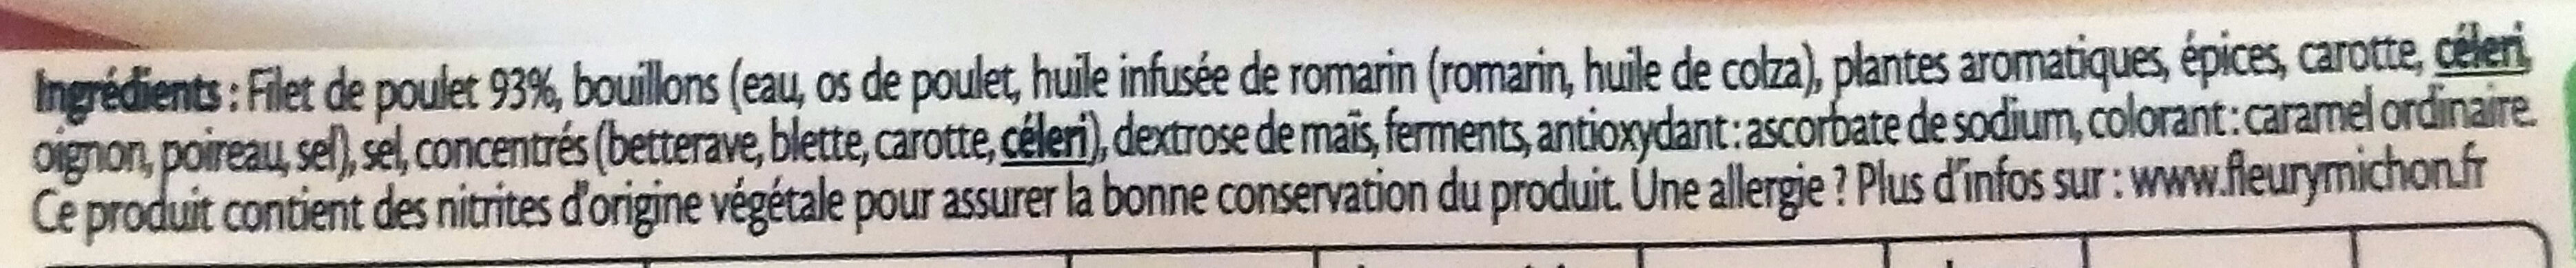 Filet de Poulet - Fumé - Ingredienser - fr